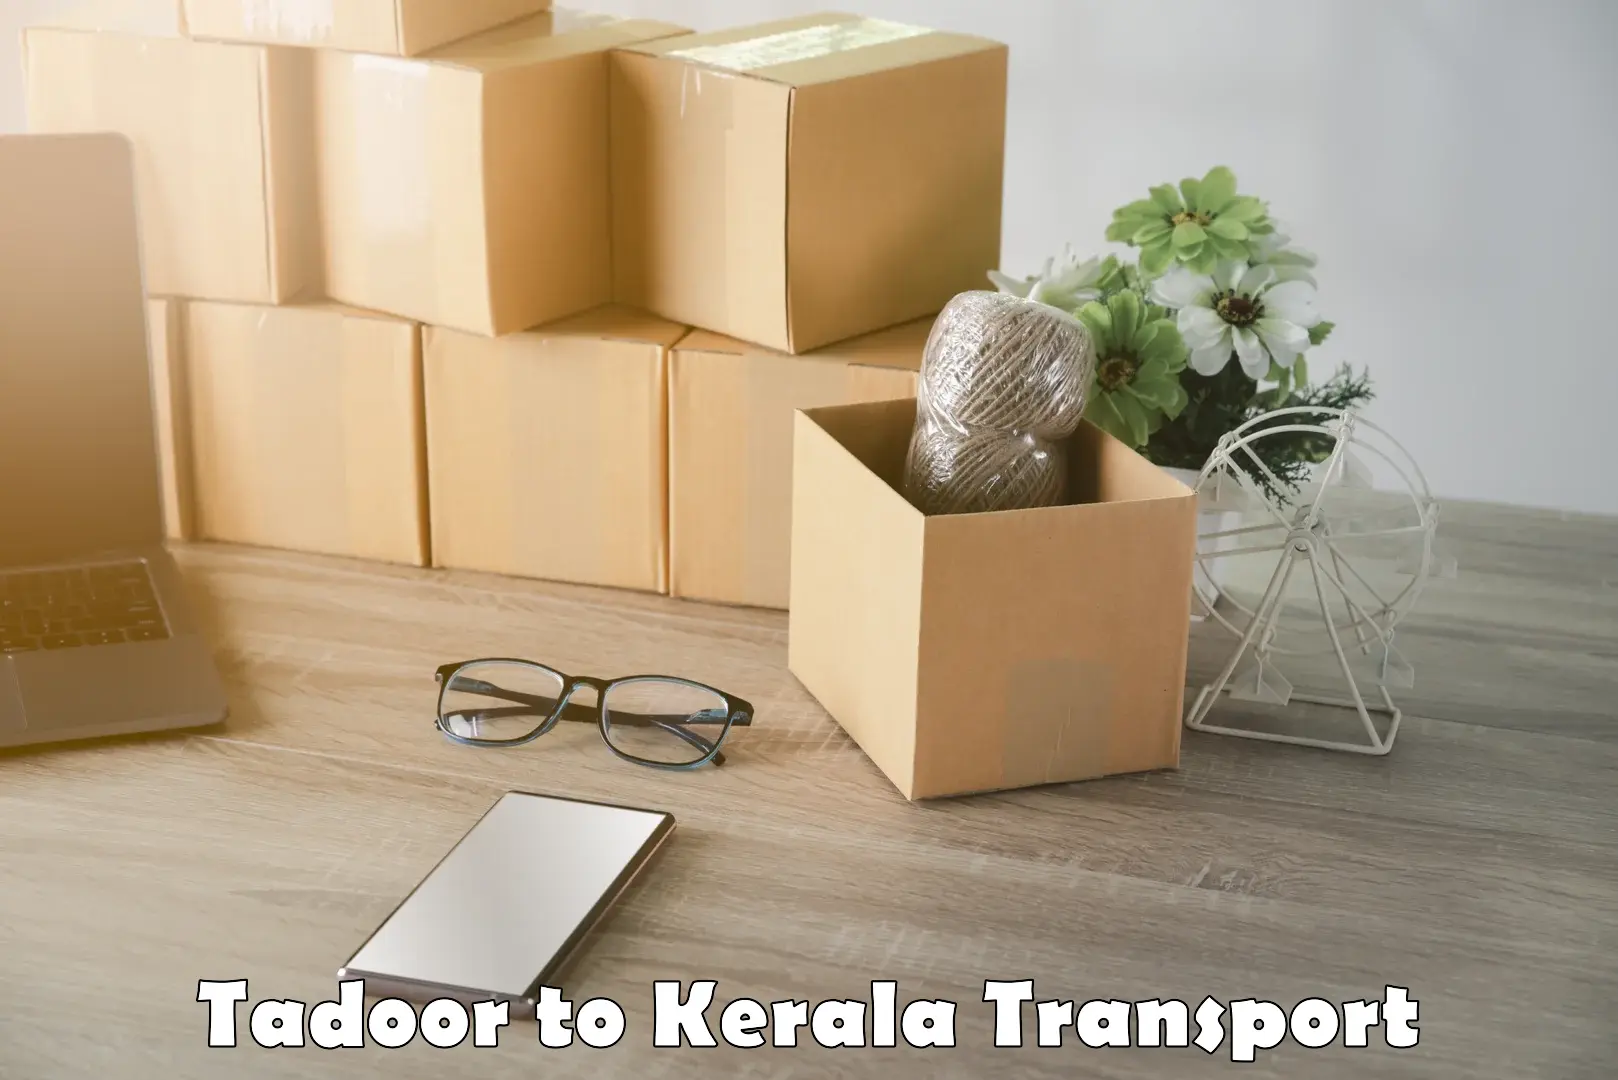 Online transport booking Tadoor to Idukki